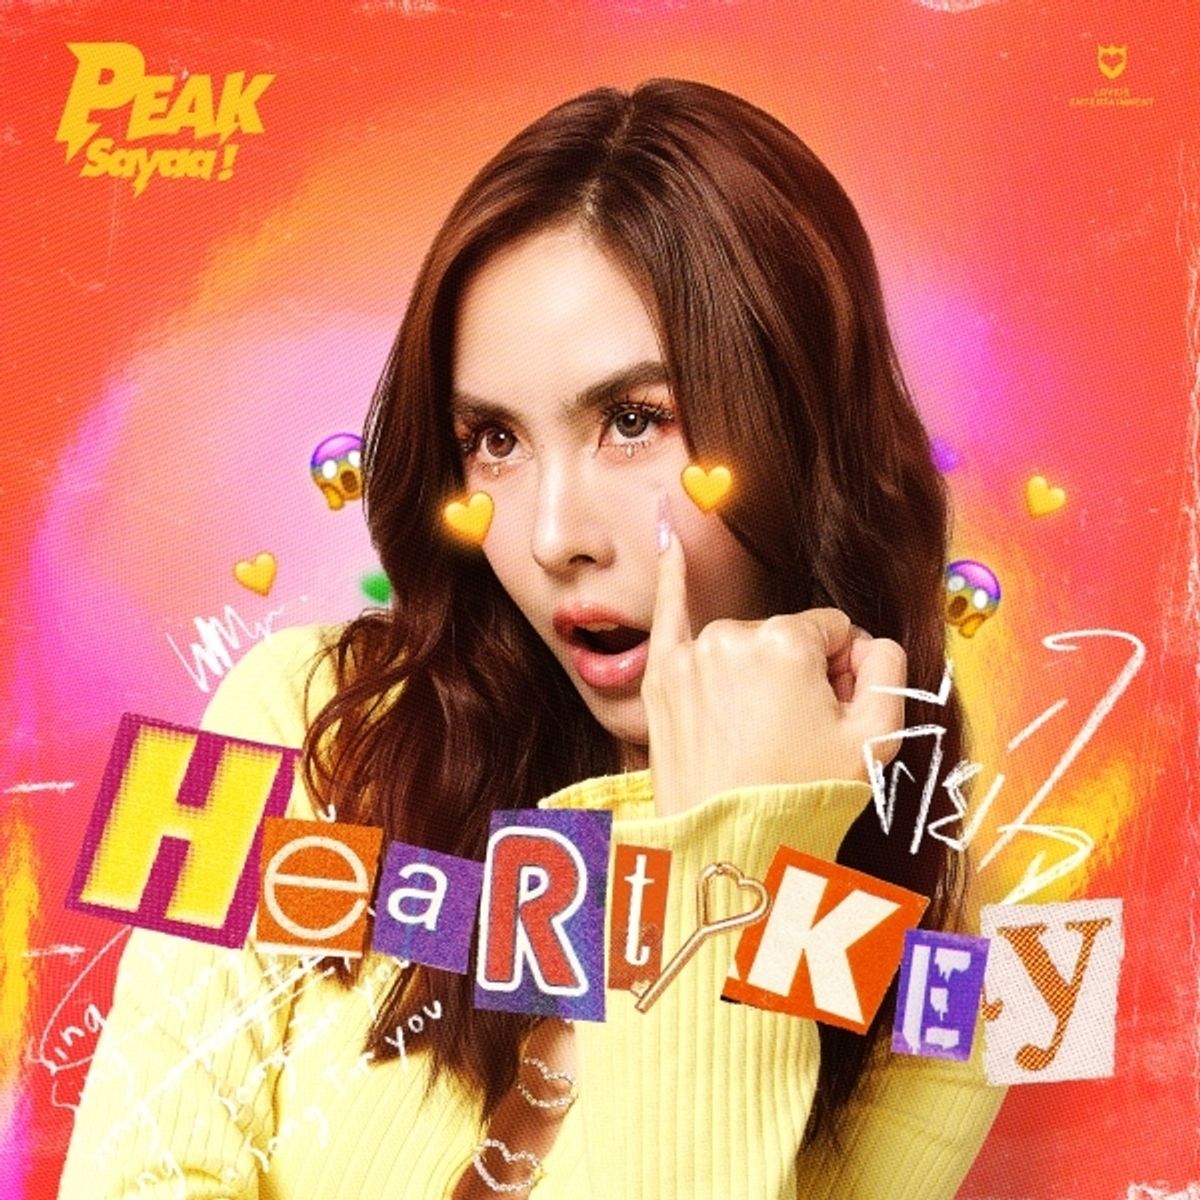 คีย์ใจ (Heart Key) - PEAKSayaa!